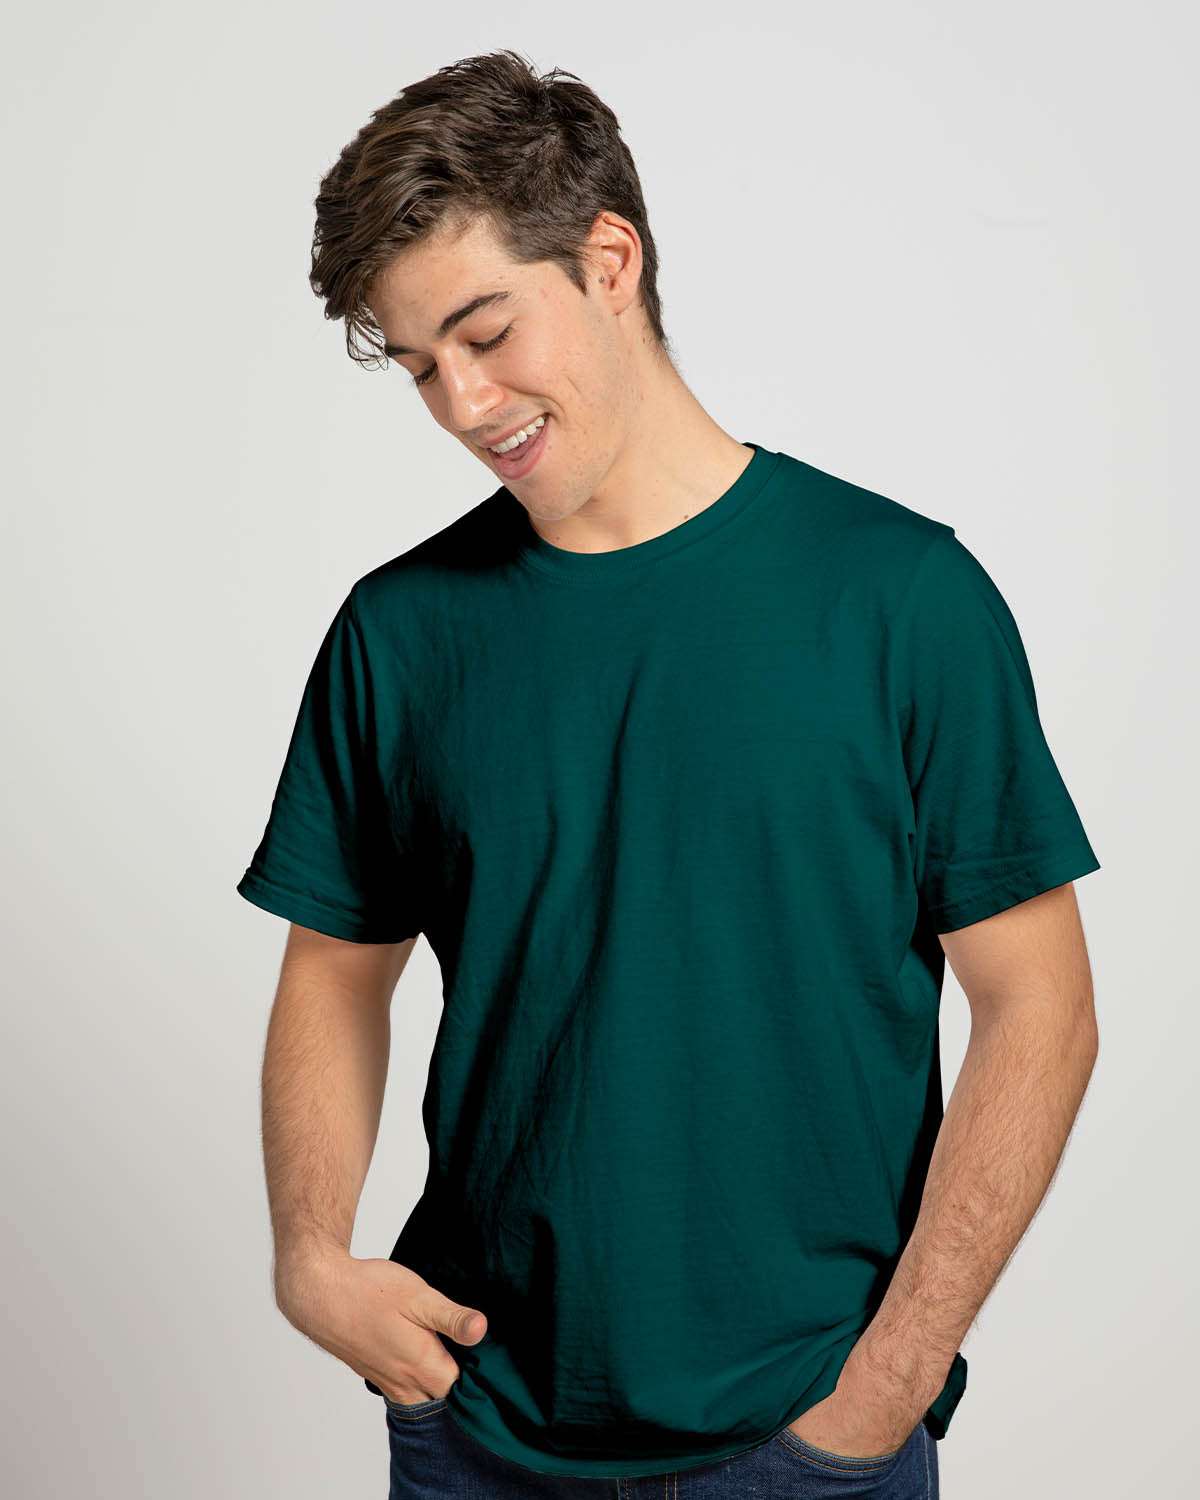 Plain Bottle Green Half Sleeve Cotton T-shirt for Men's